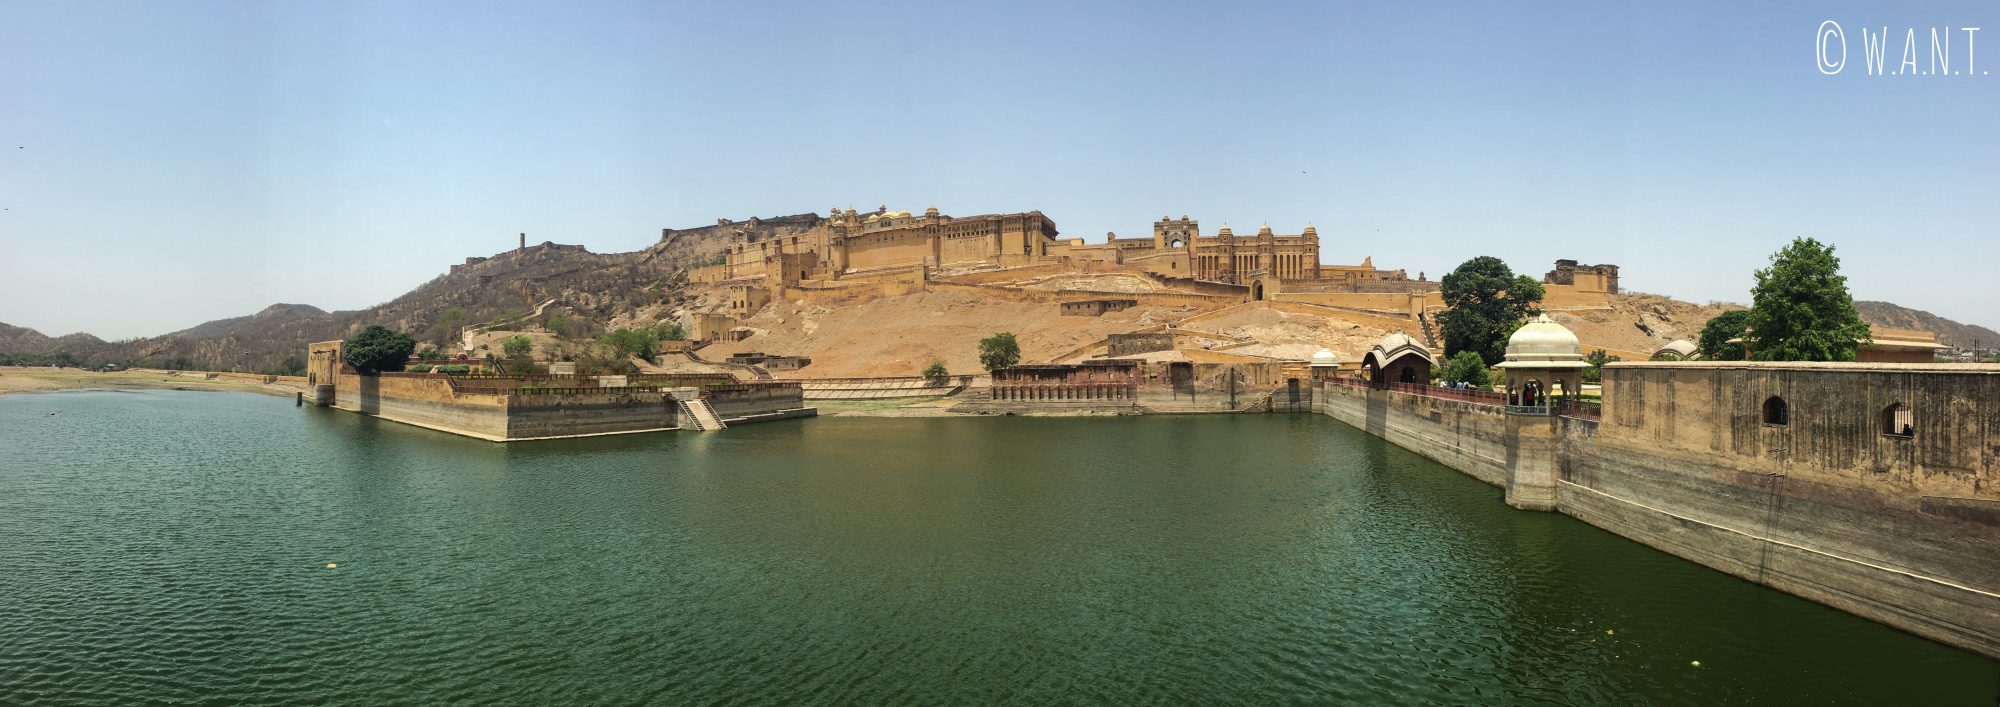 Panorama du Fort d'Amber situé à 11 kilomètres de Jaipur